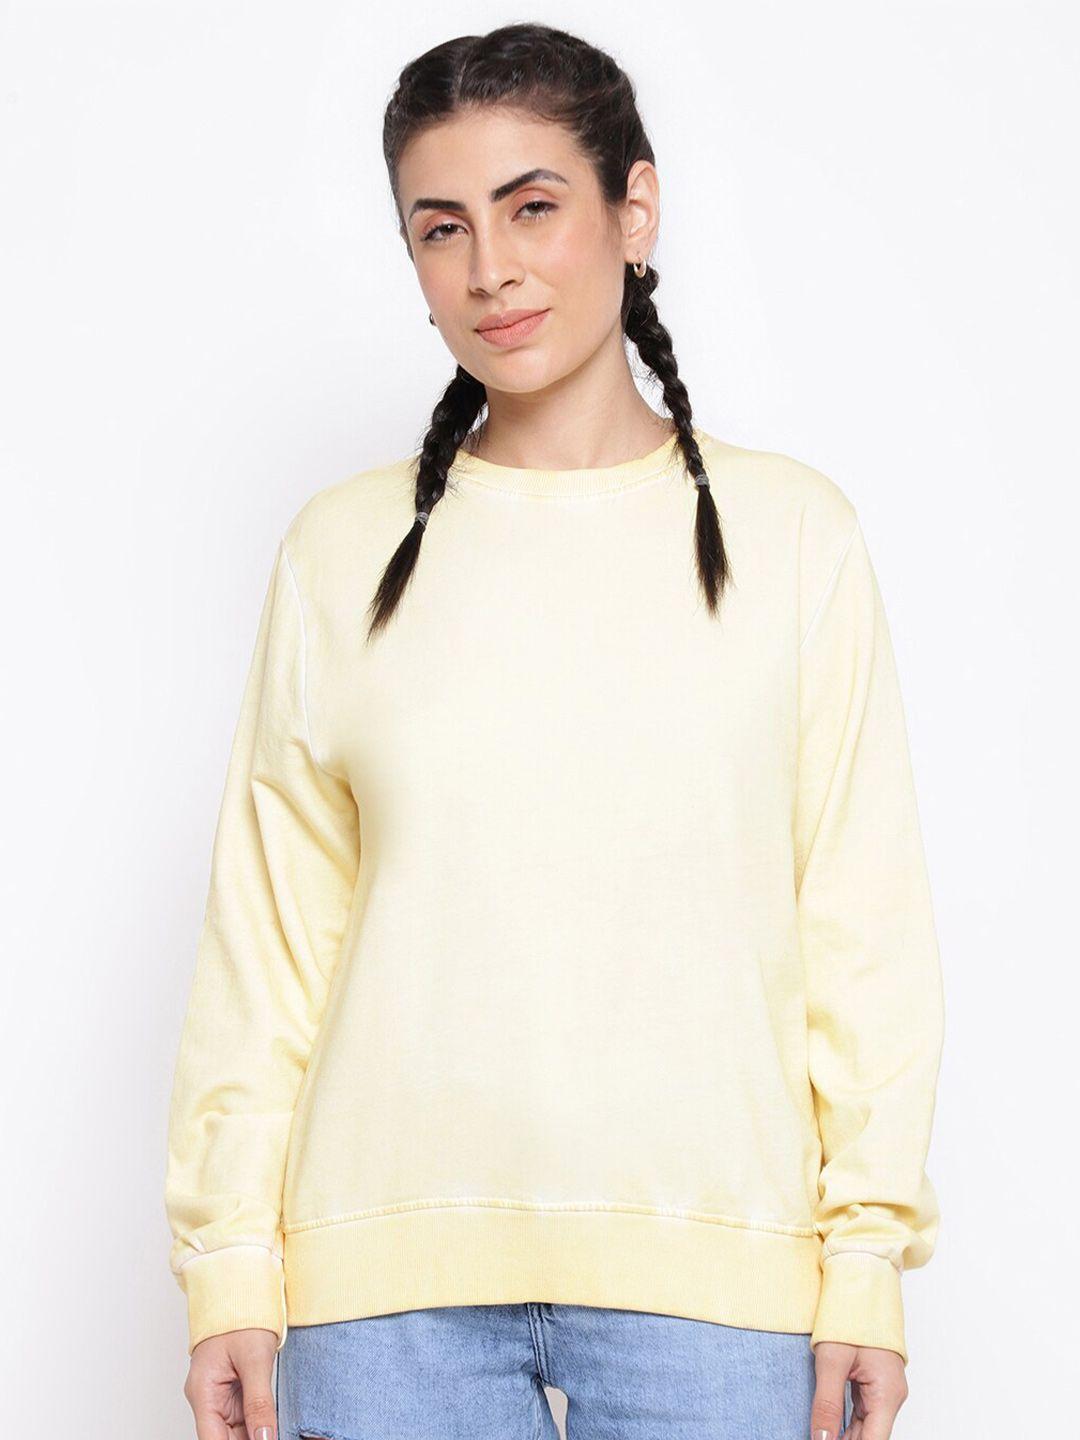 belliskey women printed sweatshirt